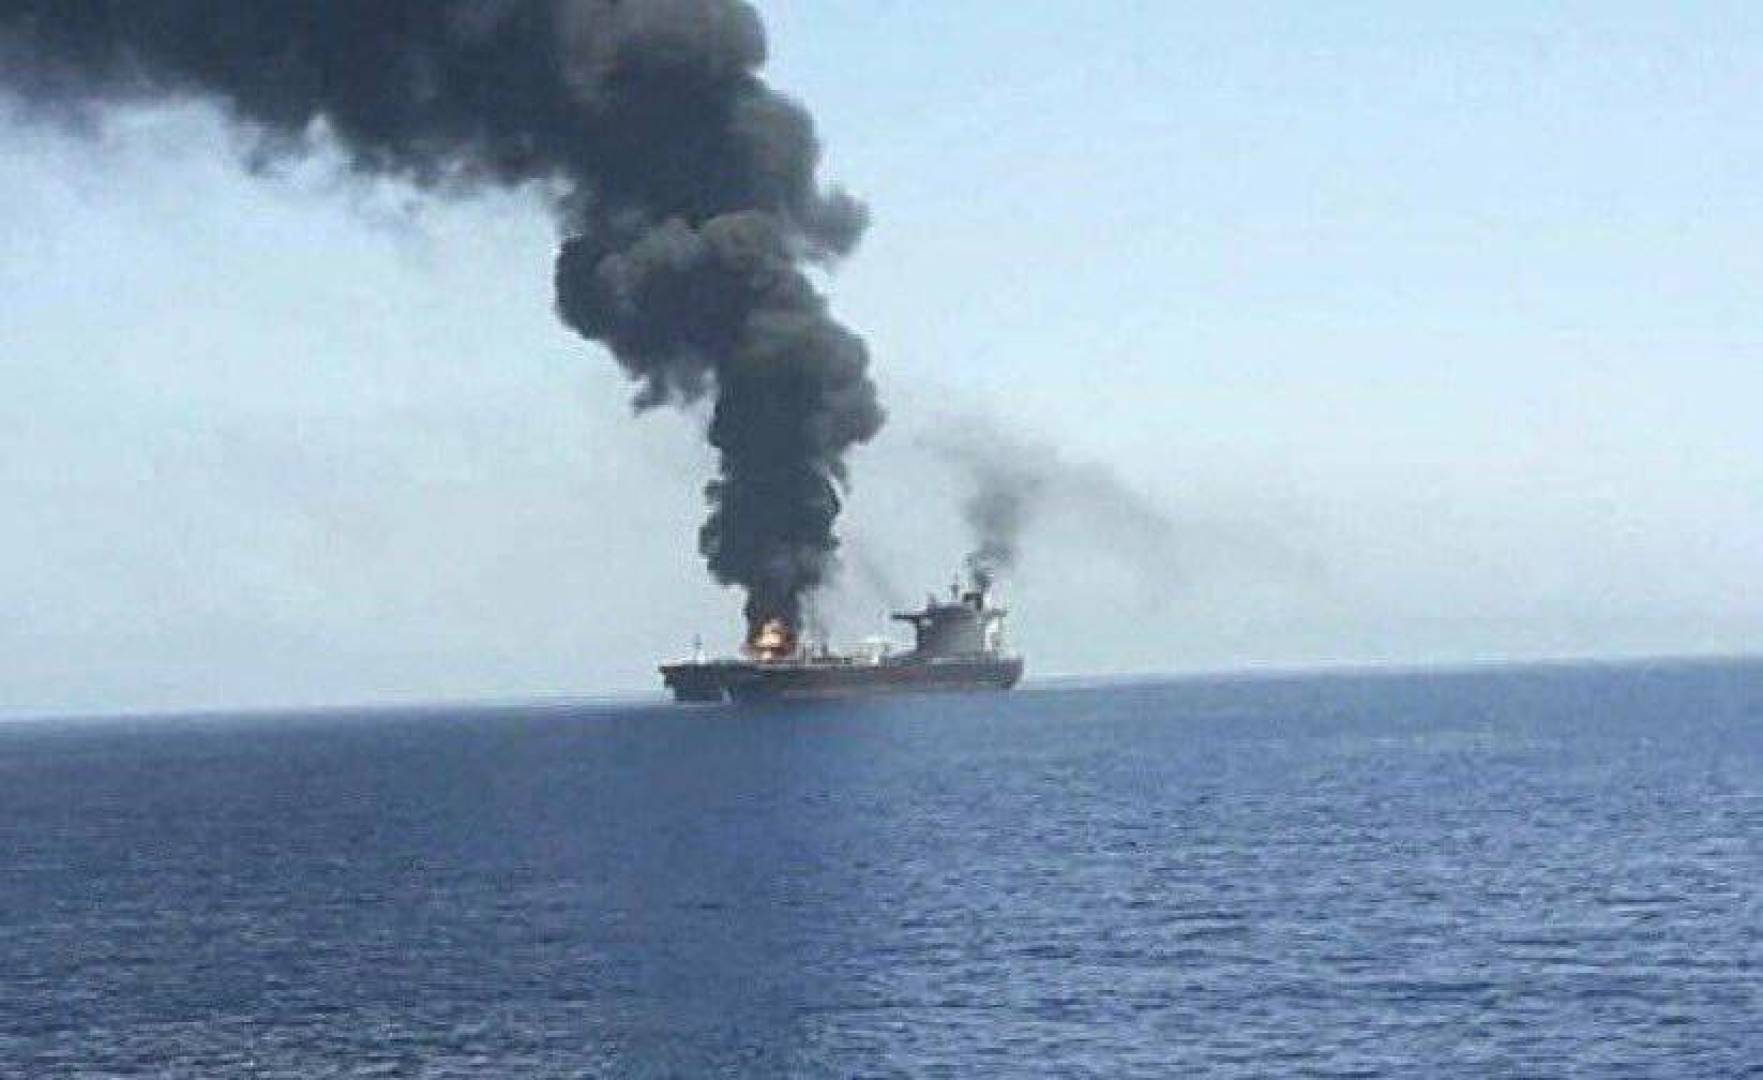 تعرض سفينة شحن إسرائيلية لهجوم في المحيط الهندي ووقوع أضرار